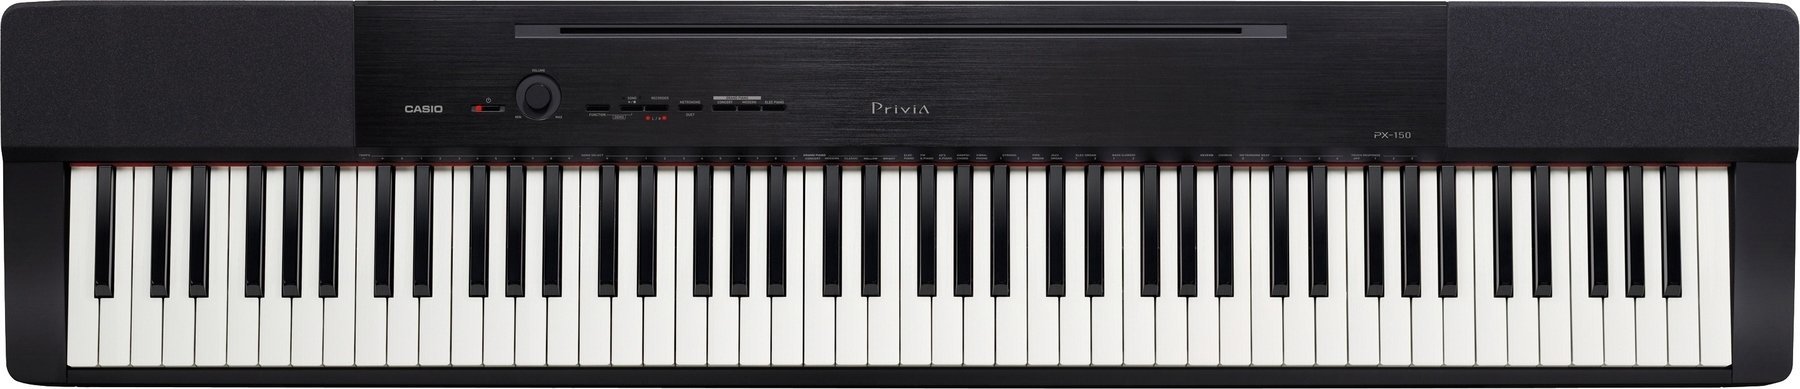 Дигитално Stage пиано Casio PX150 BK Privia